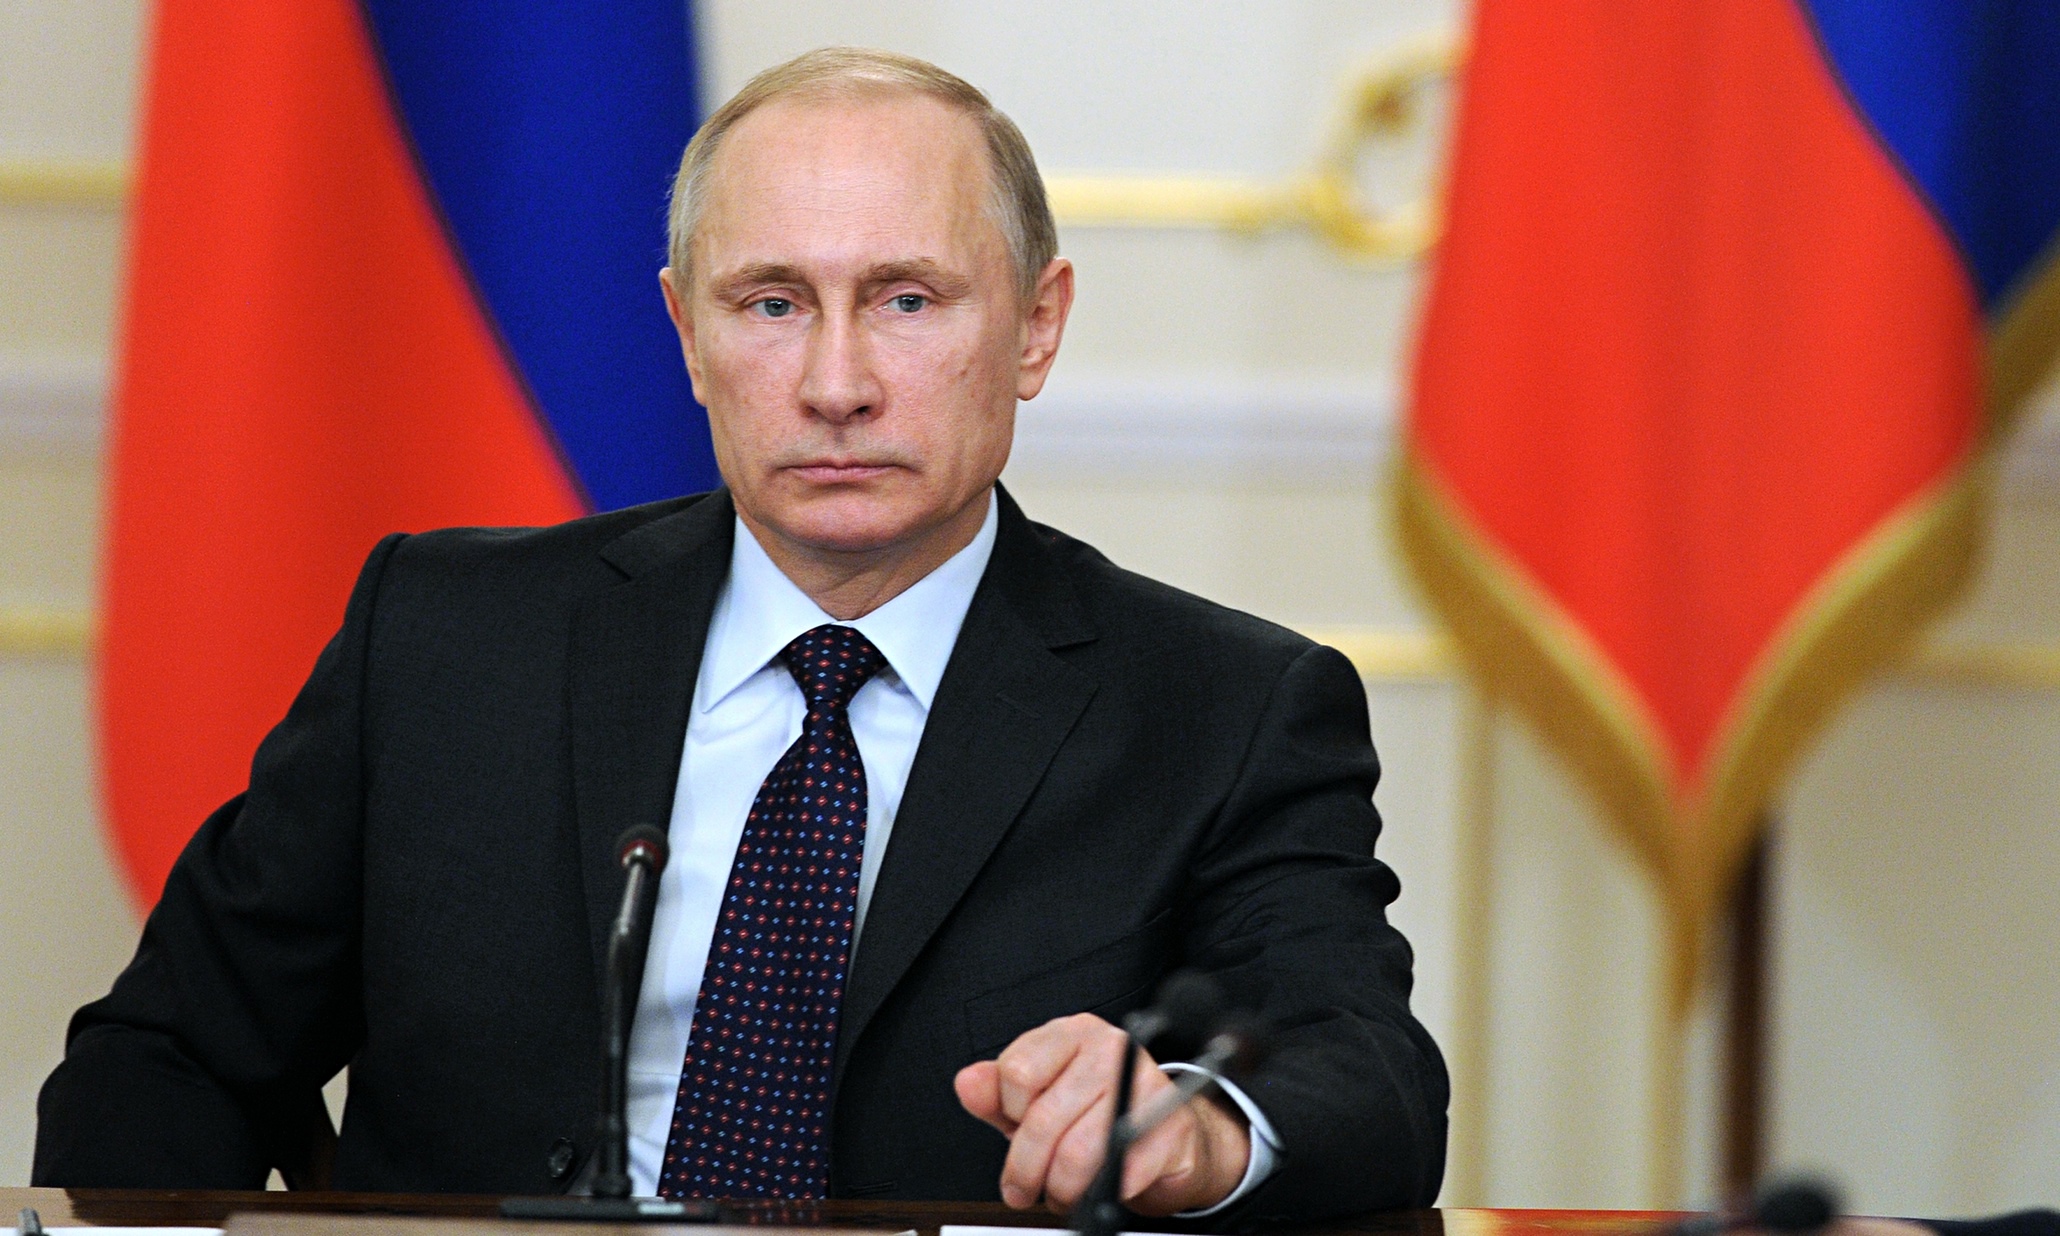 Β.Πούτιν για αμερικανικές εκλογές: «Θα συγχαρώ όποιο βγει πρόεδρος όταν ολοκληρωθούν οι διαδικασίες»